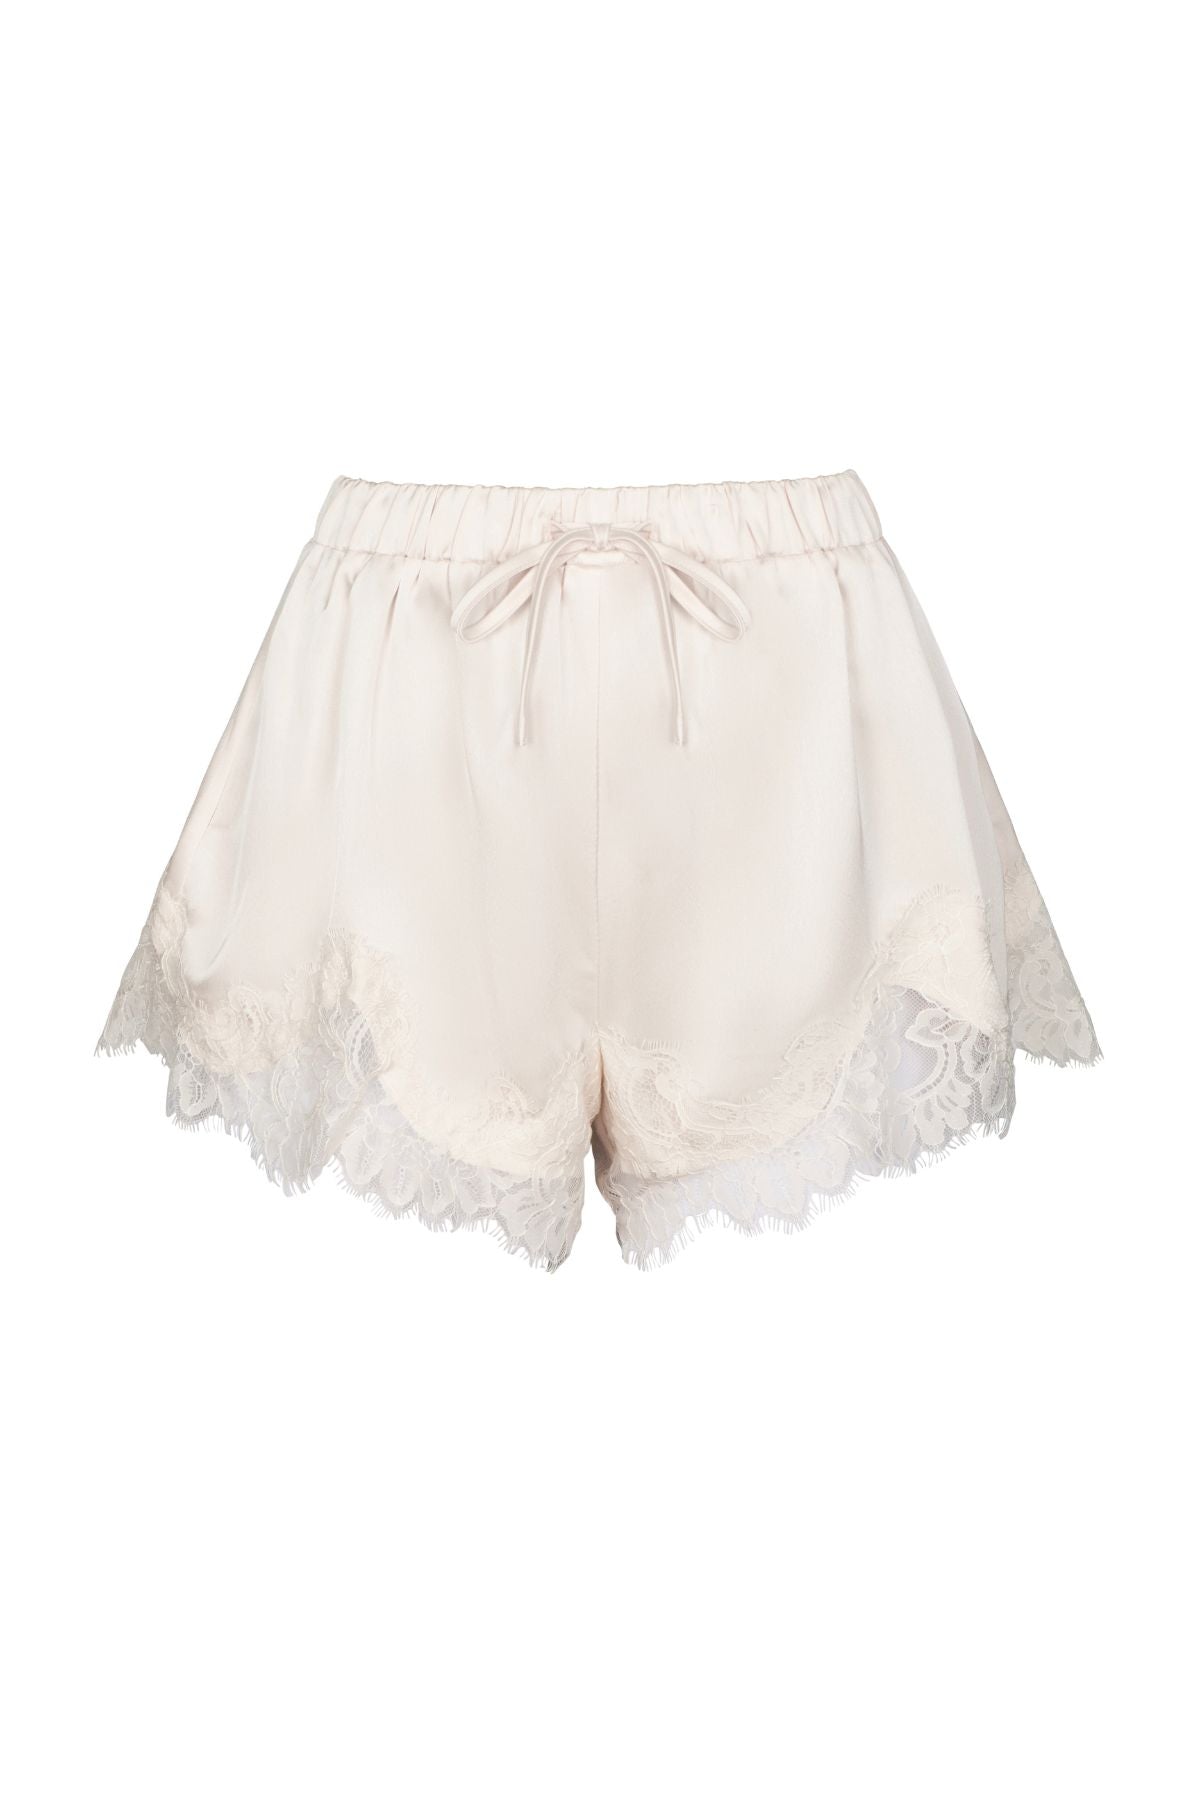 LEOLA Cream Lace Shorts